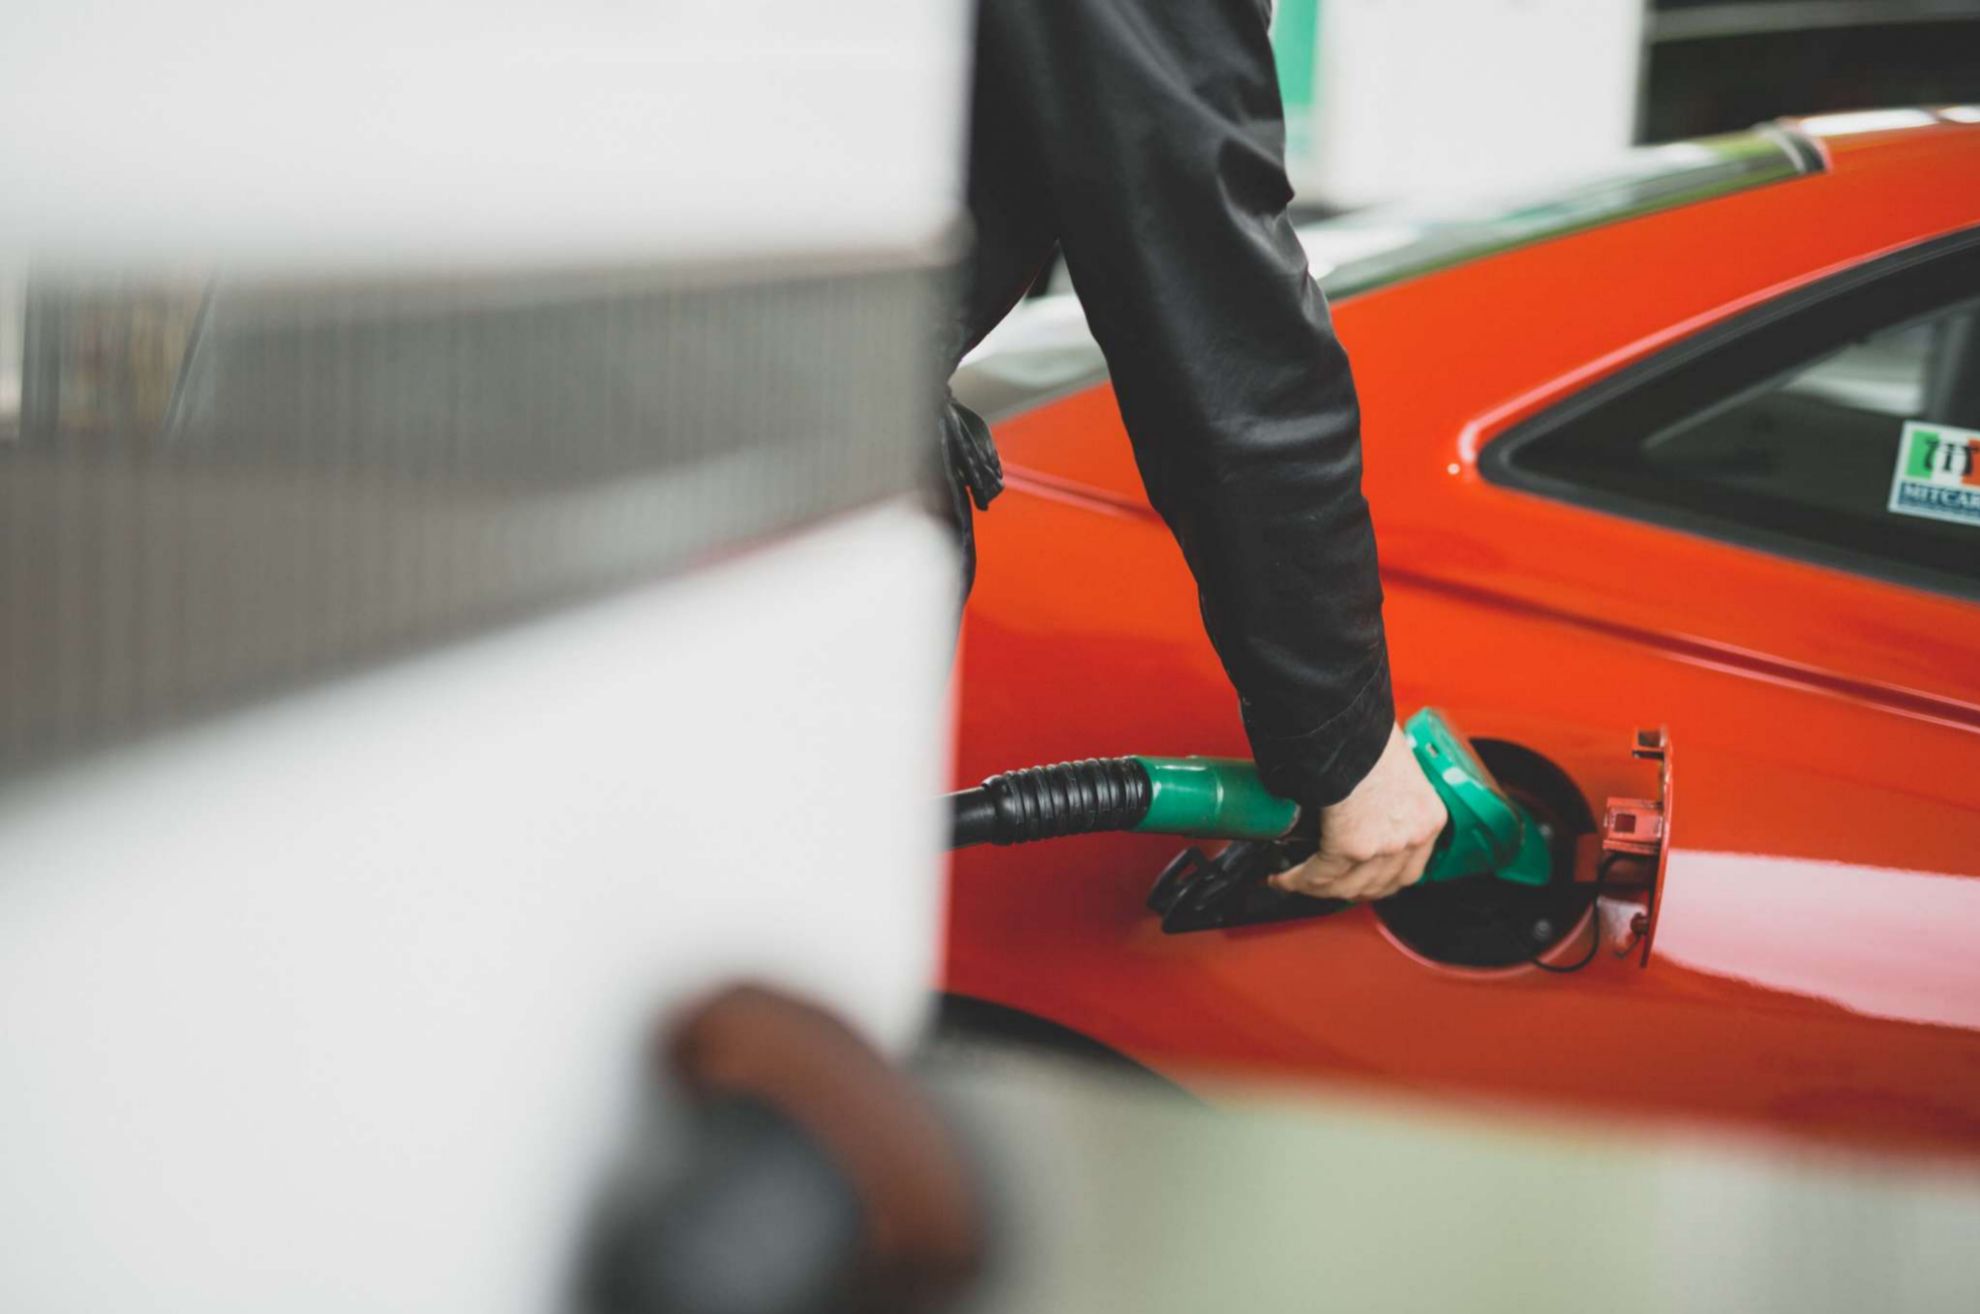 ahorrar combustible - trucos - falsos mitos - leyendas - gasolina - precio de la gasolina